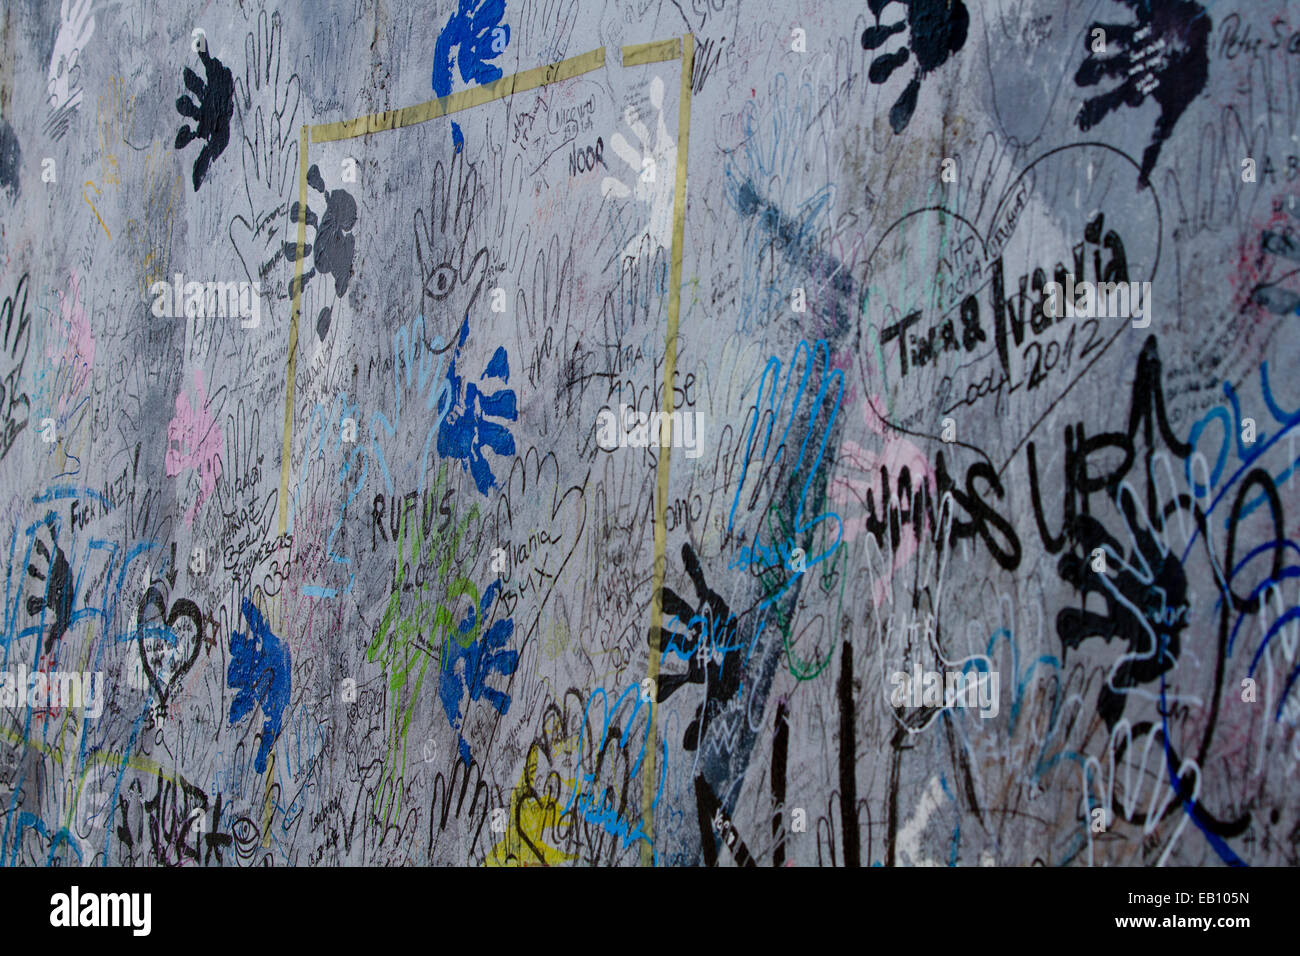 Graffiti hand prints street art Berlin wall urban Stock Photo